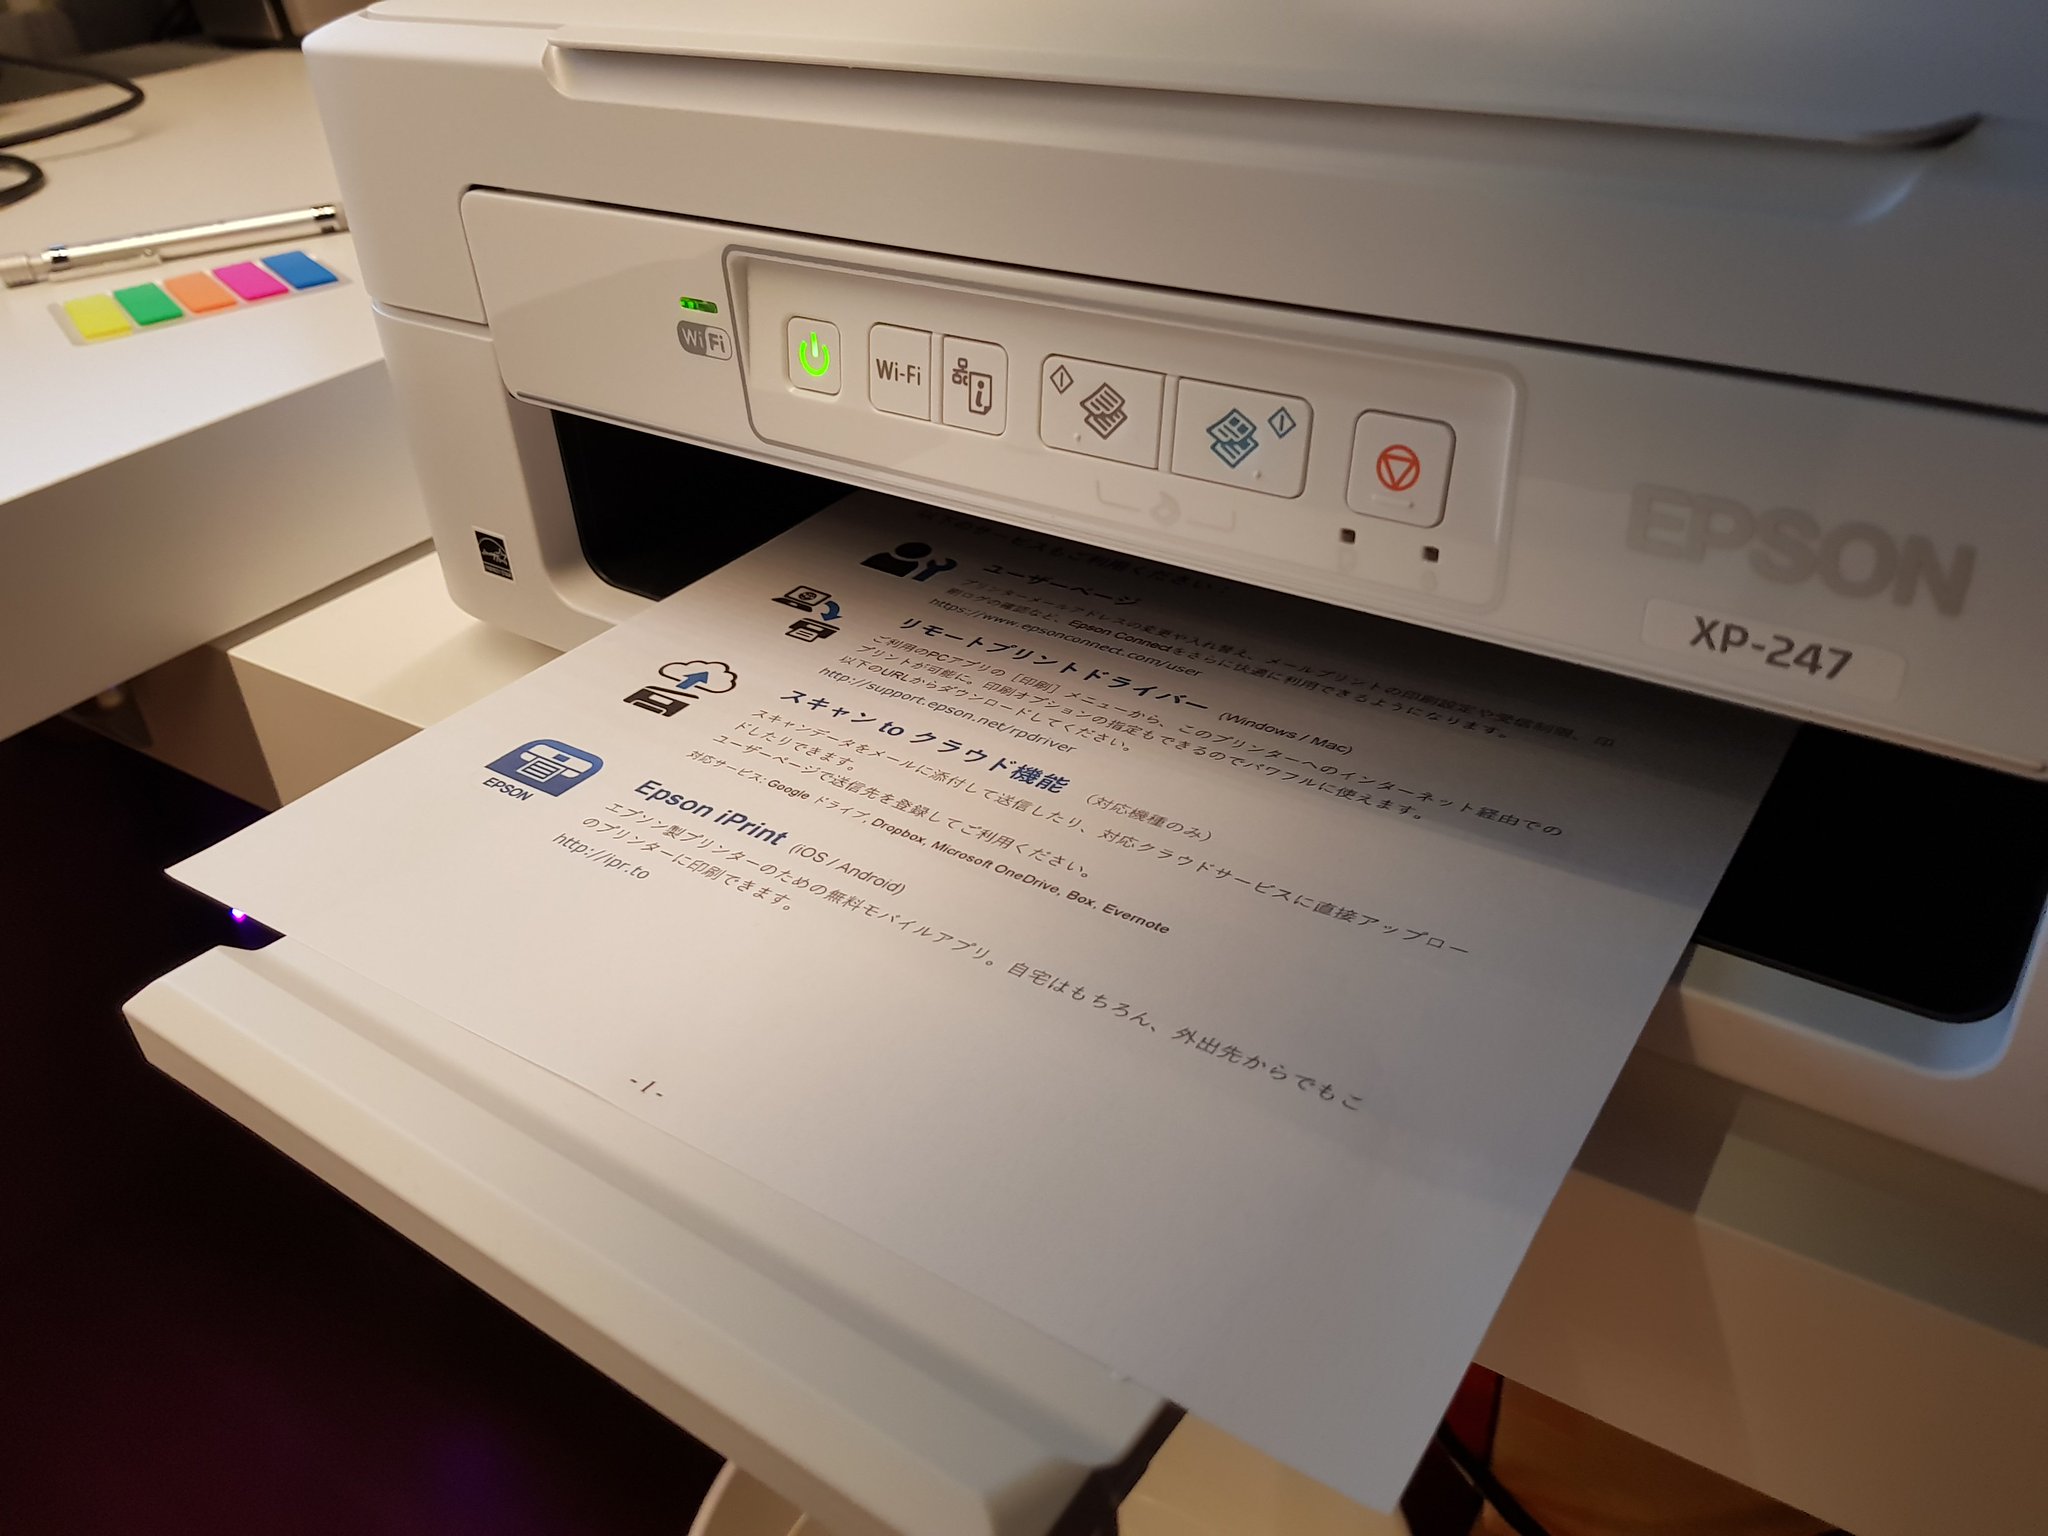 Kiririn On Twitter Woah Is This My Printer Telling Me To Learn